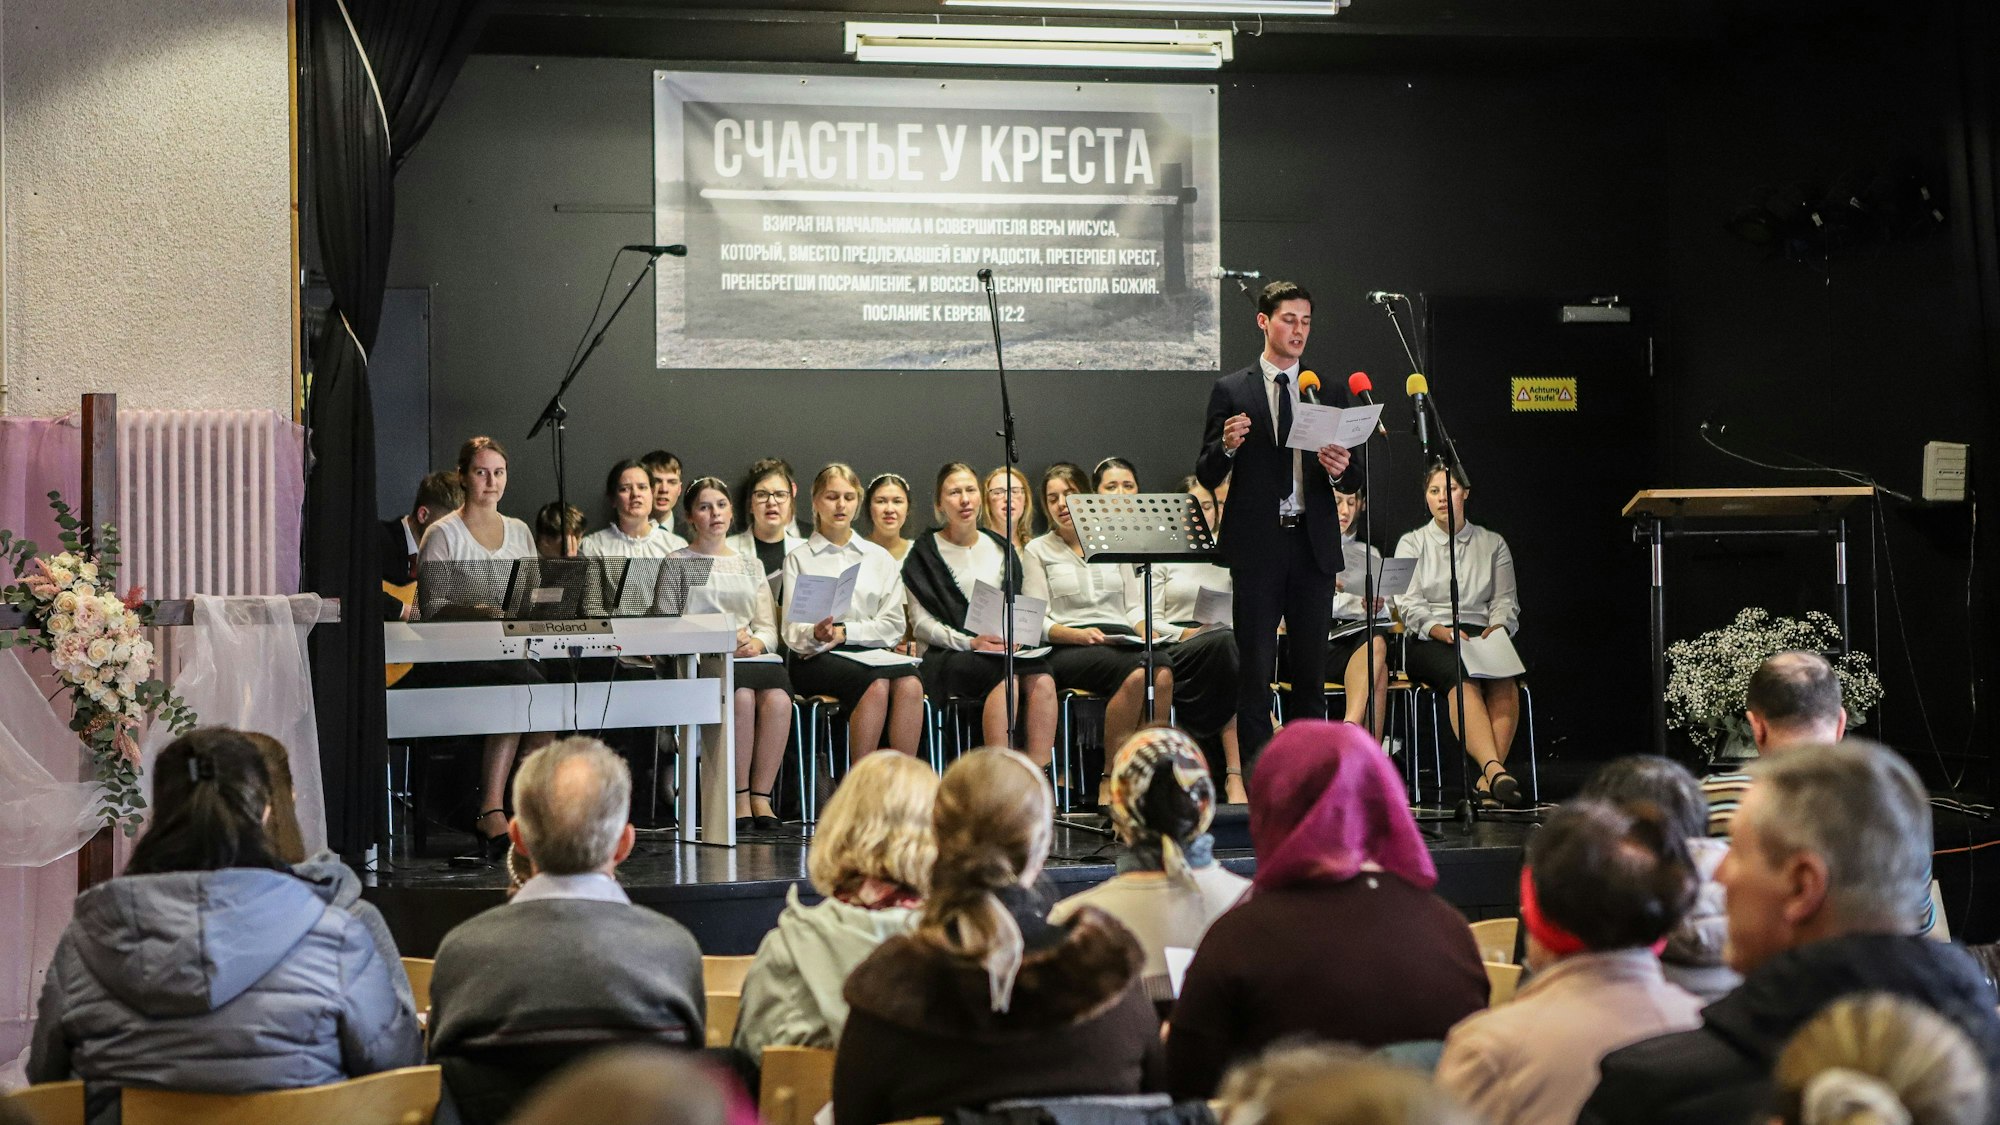 Der Jugendchor der Evangeliums-Christen-Baptisten-Gemeinde Opladen veranstaltete ein Passionssingen in der Sekundarschule.

Unter dem Motto 'Glück unterm Kreuz' sind alle ukrainischen und russischsprachigen Bürgerinnen und Bürger herzlich eingeladen.